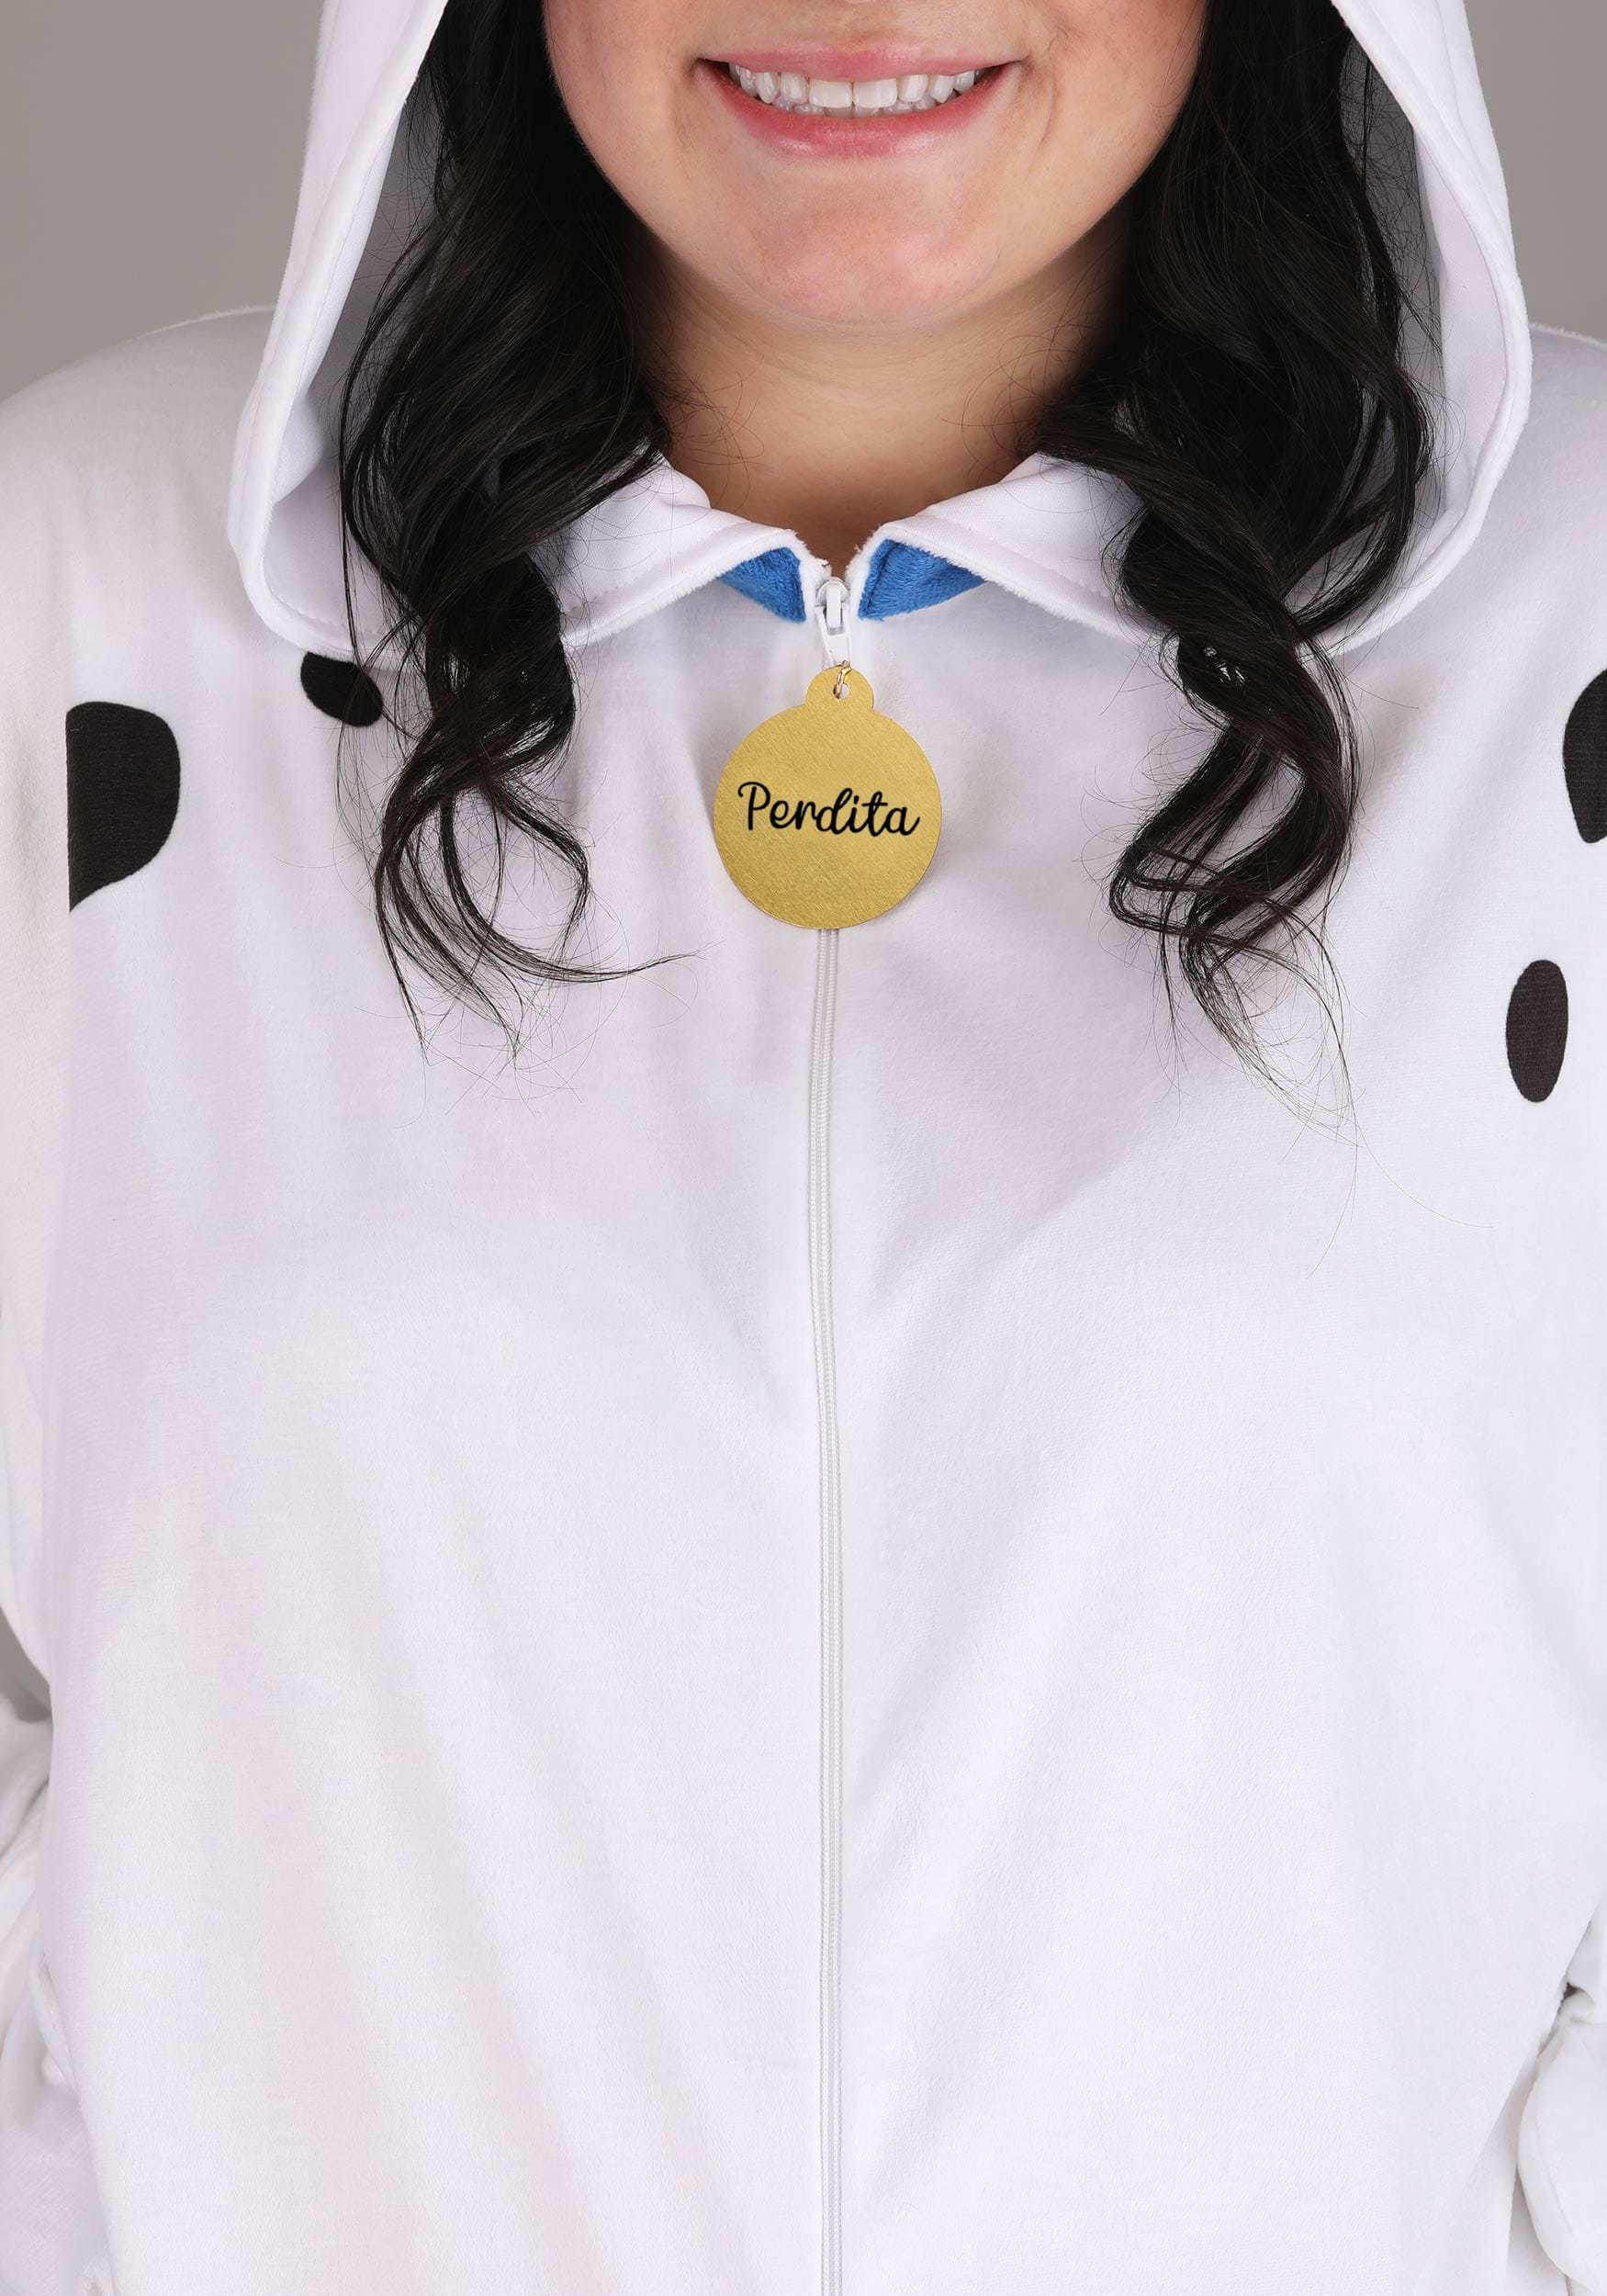 Women's Plus Size 101 Dalmatians Perdita Costume Onesie